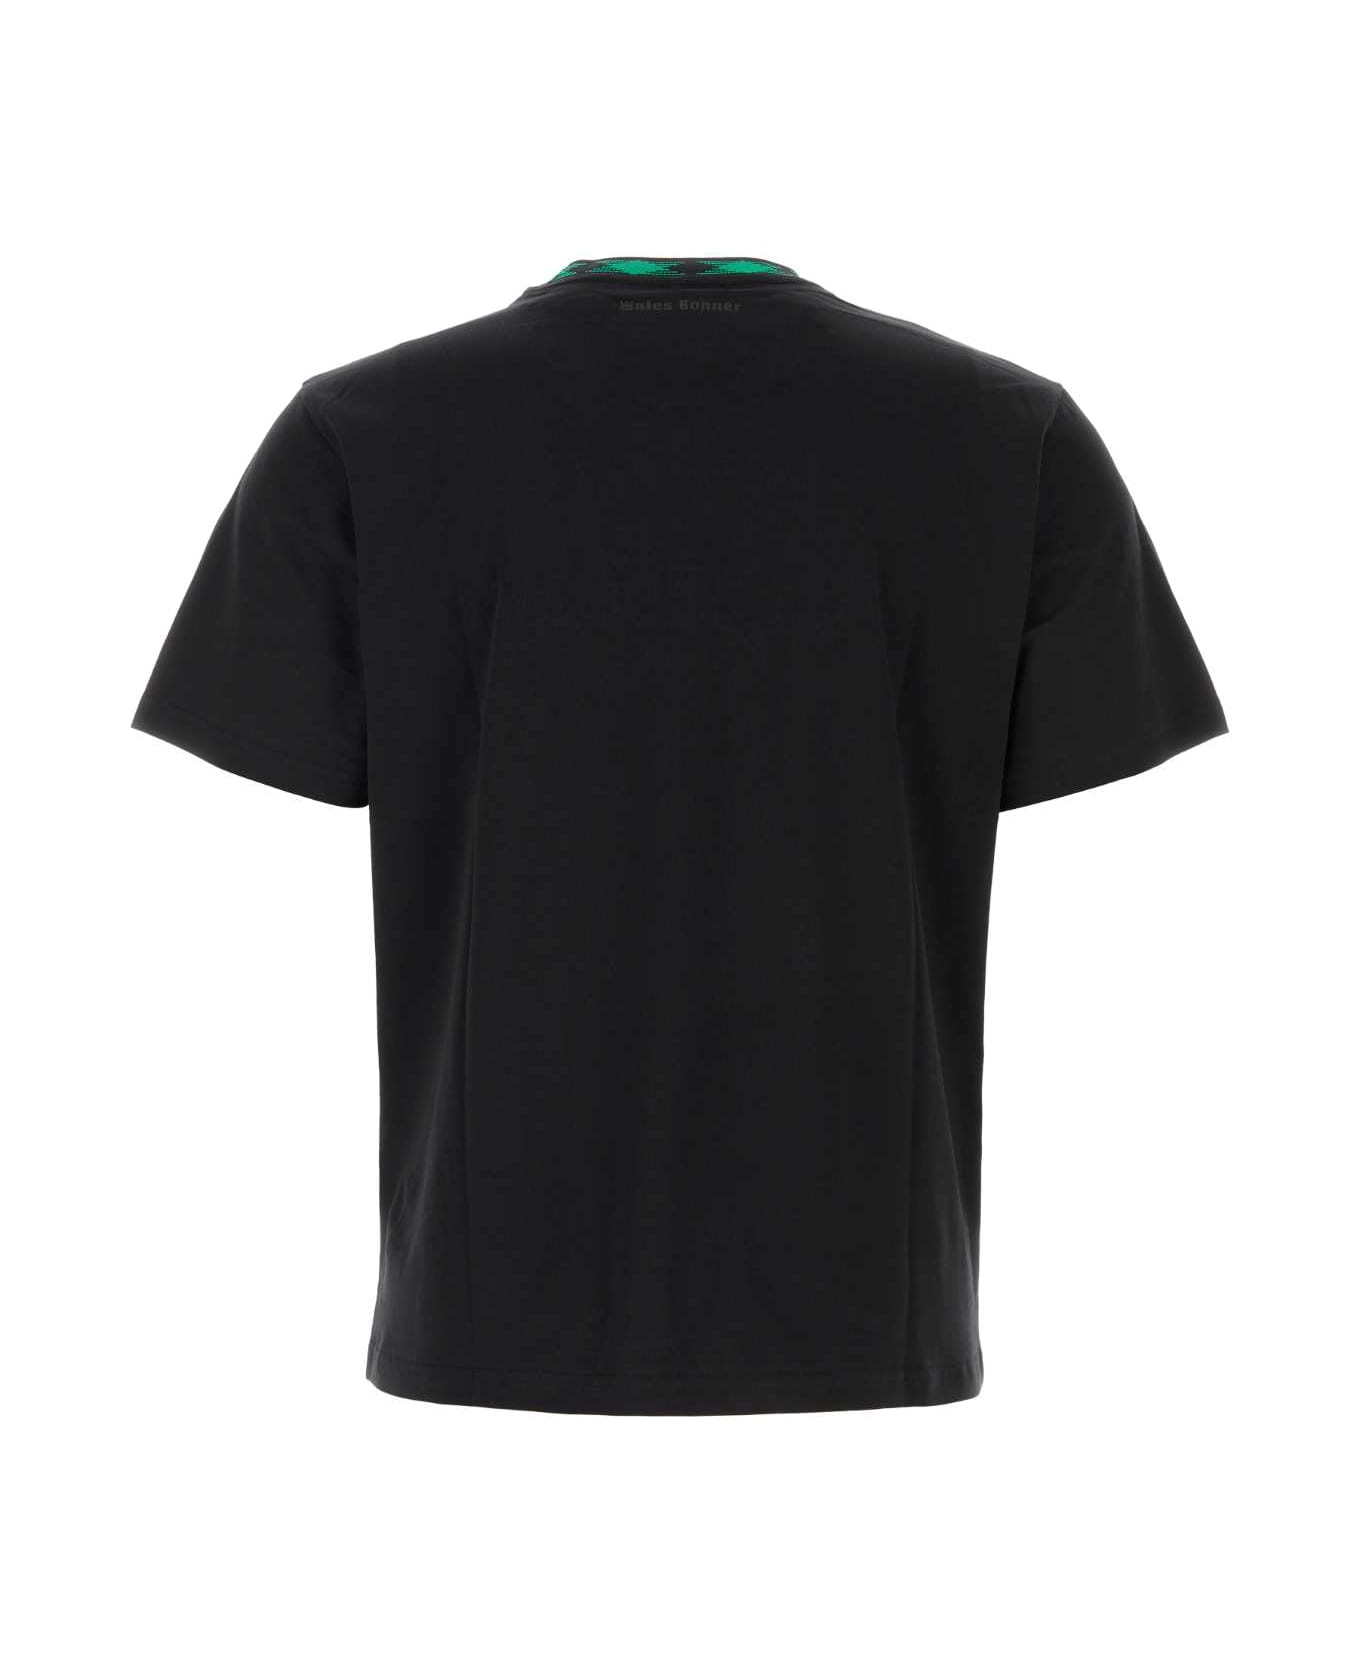 Wales Bonner Black Cotton Original T-shirt - BLACK